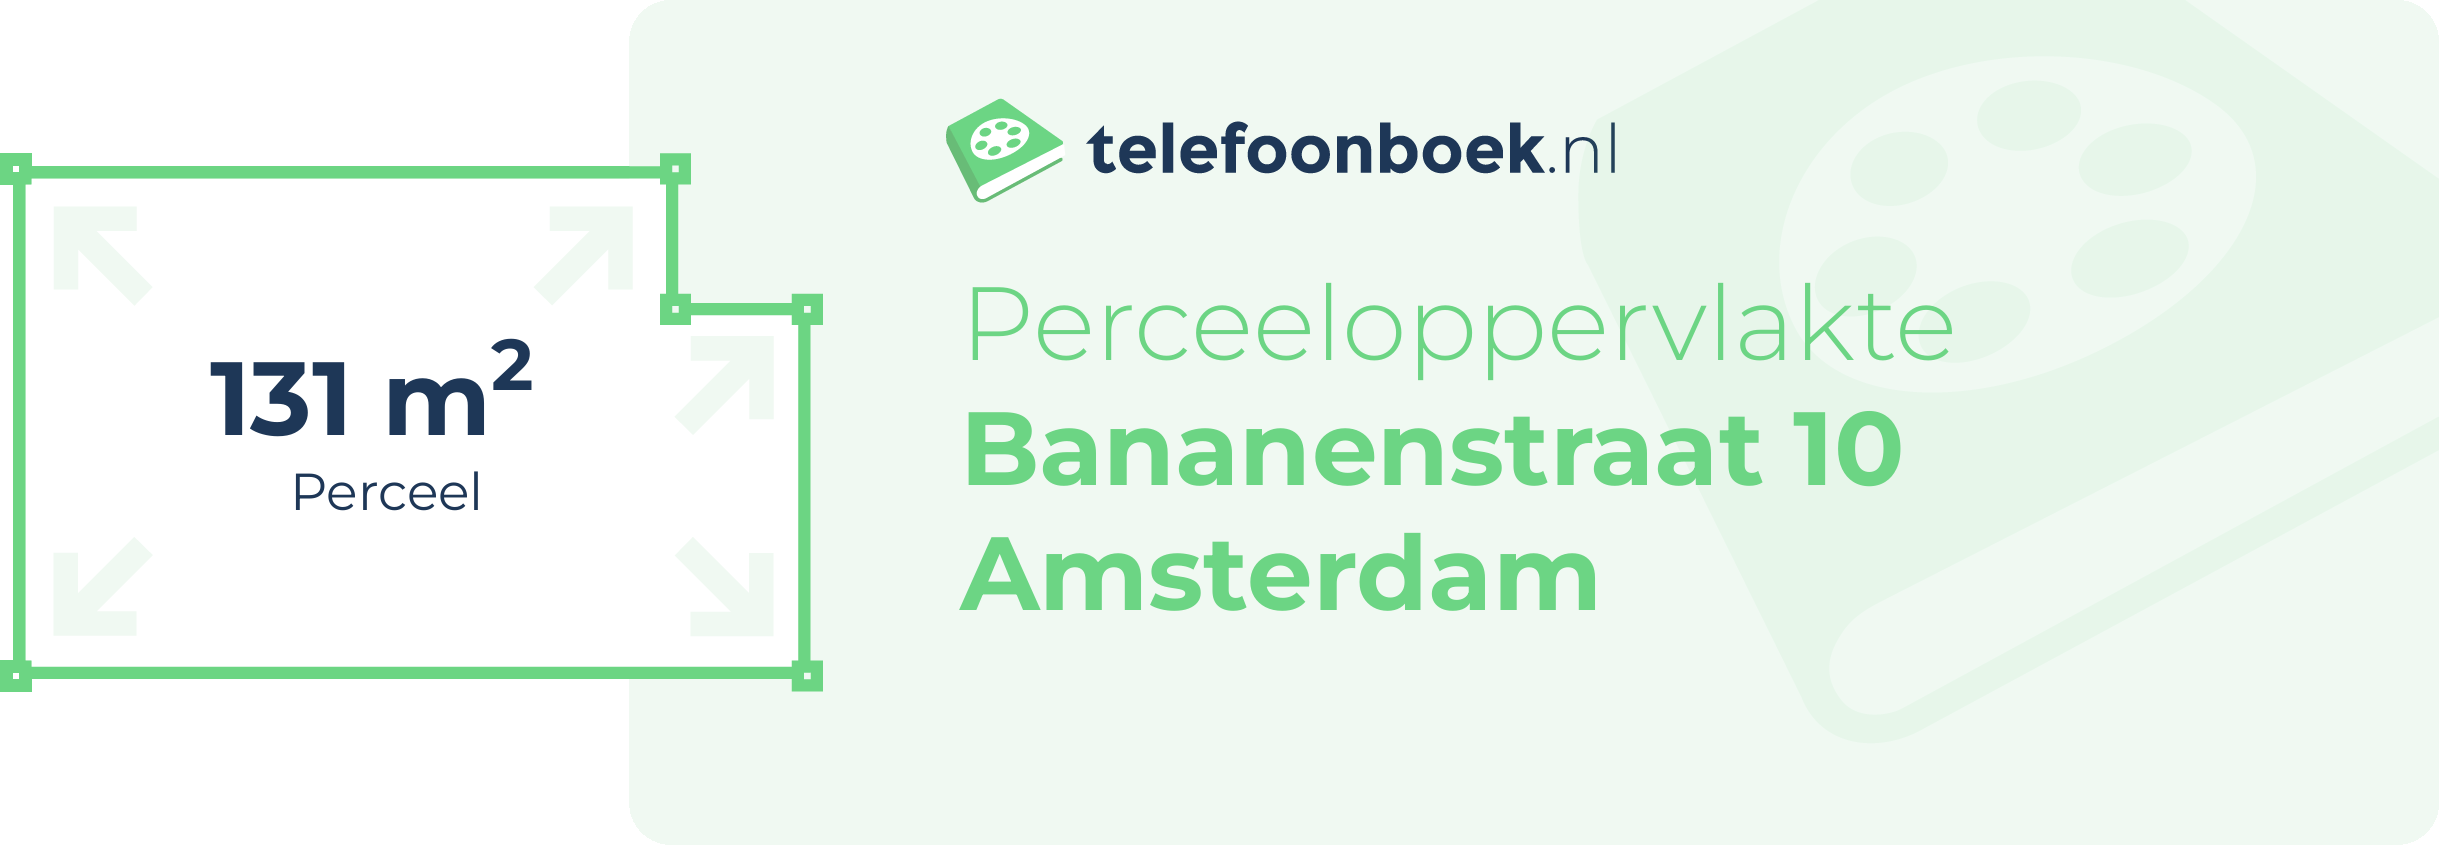 Perceeloppervlakte Bananenstraat 10 Amsterdam